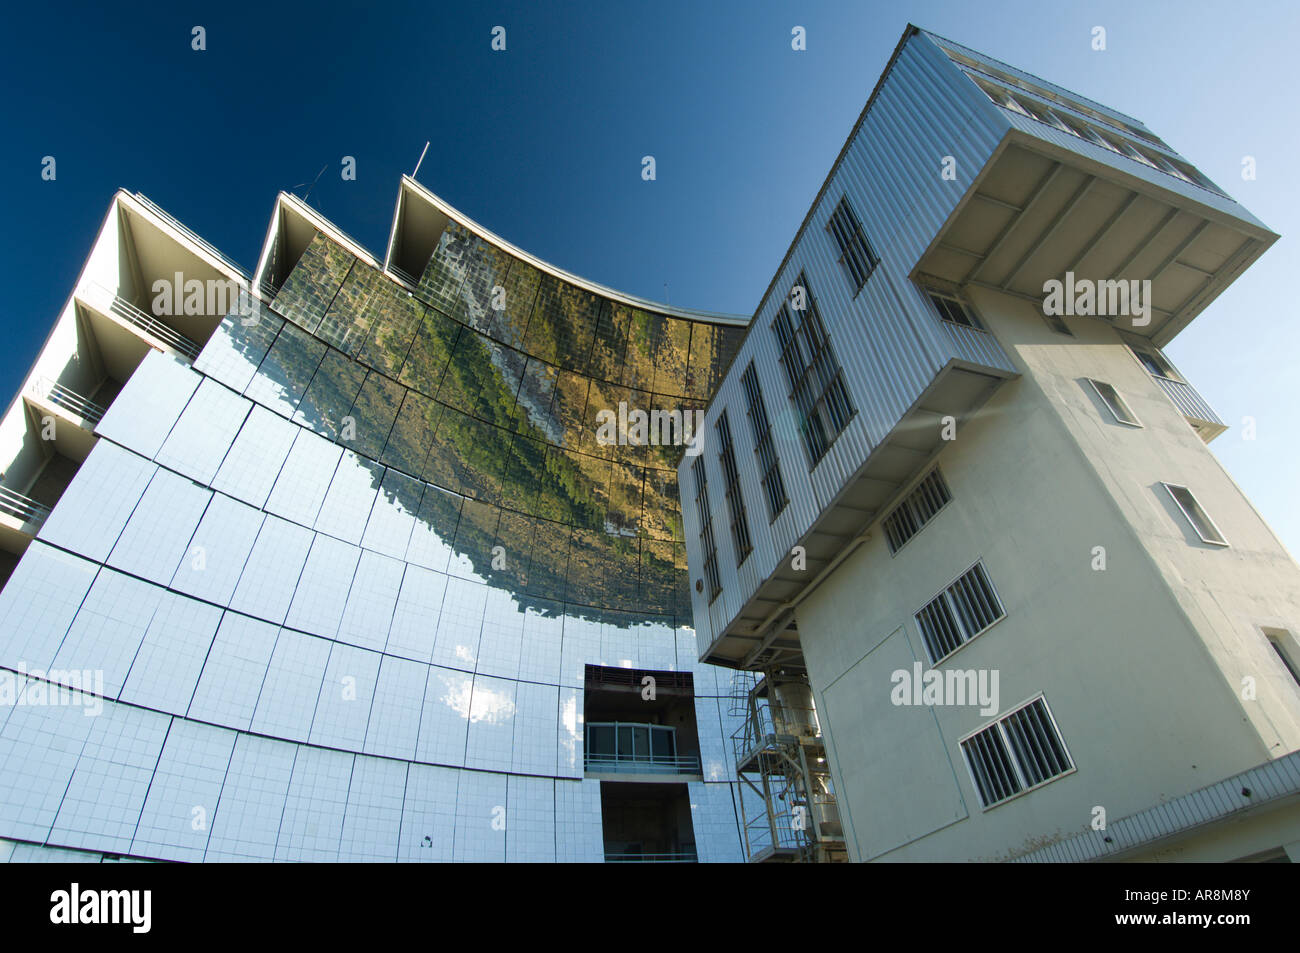 Specchio solare immagini e fotografie stock ad alta risoluzione - Alamy